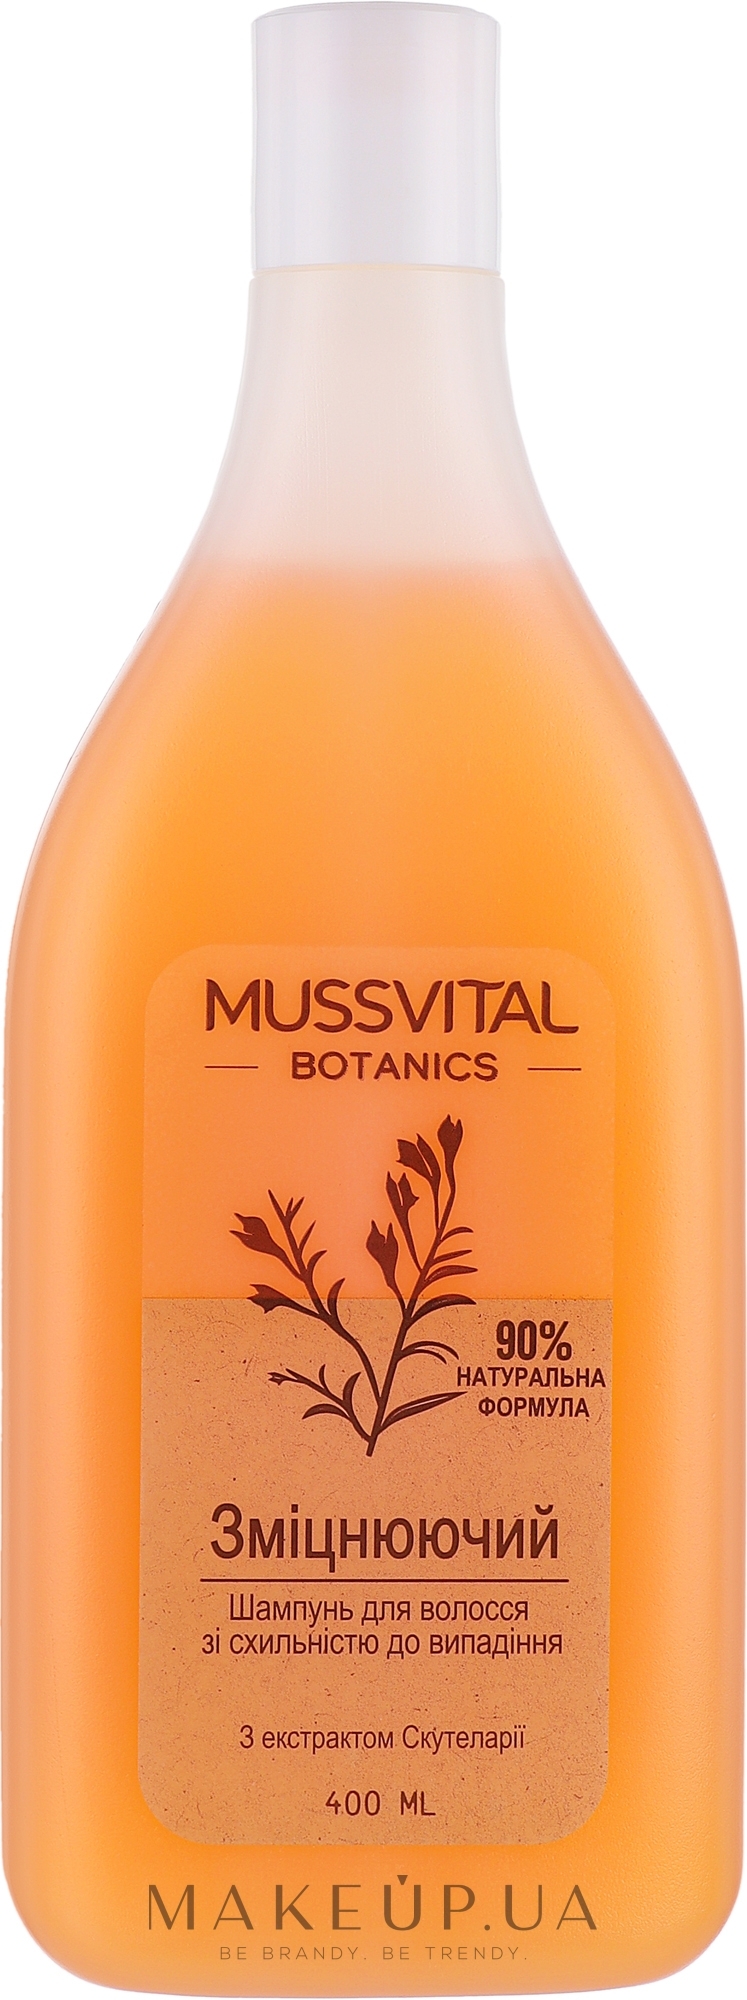 Укрепляющий шампунь для волос со склонностью к выпадению - Mussvital Botanics — фото 400ml